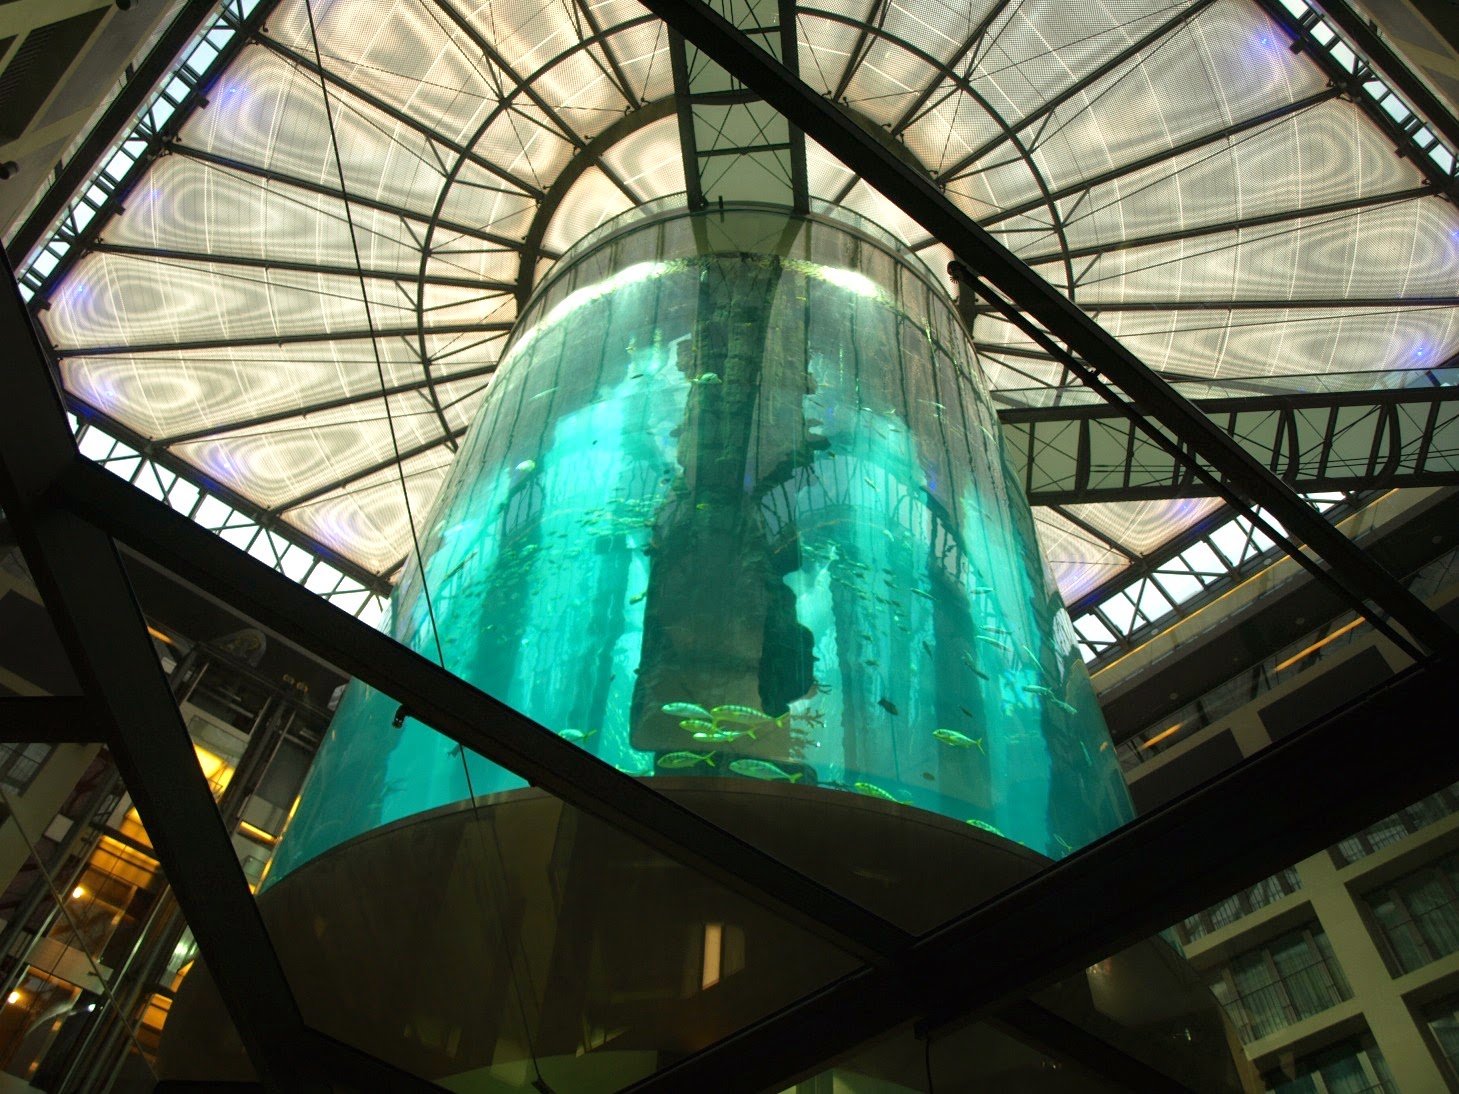 The AquaDom aquarium with unique design